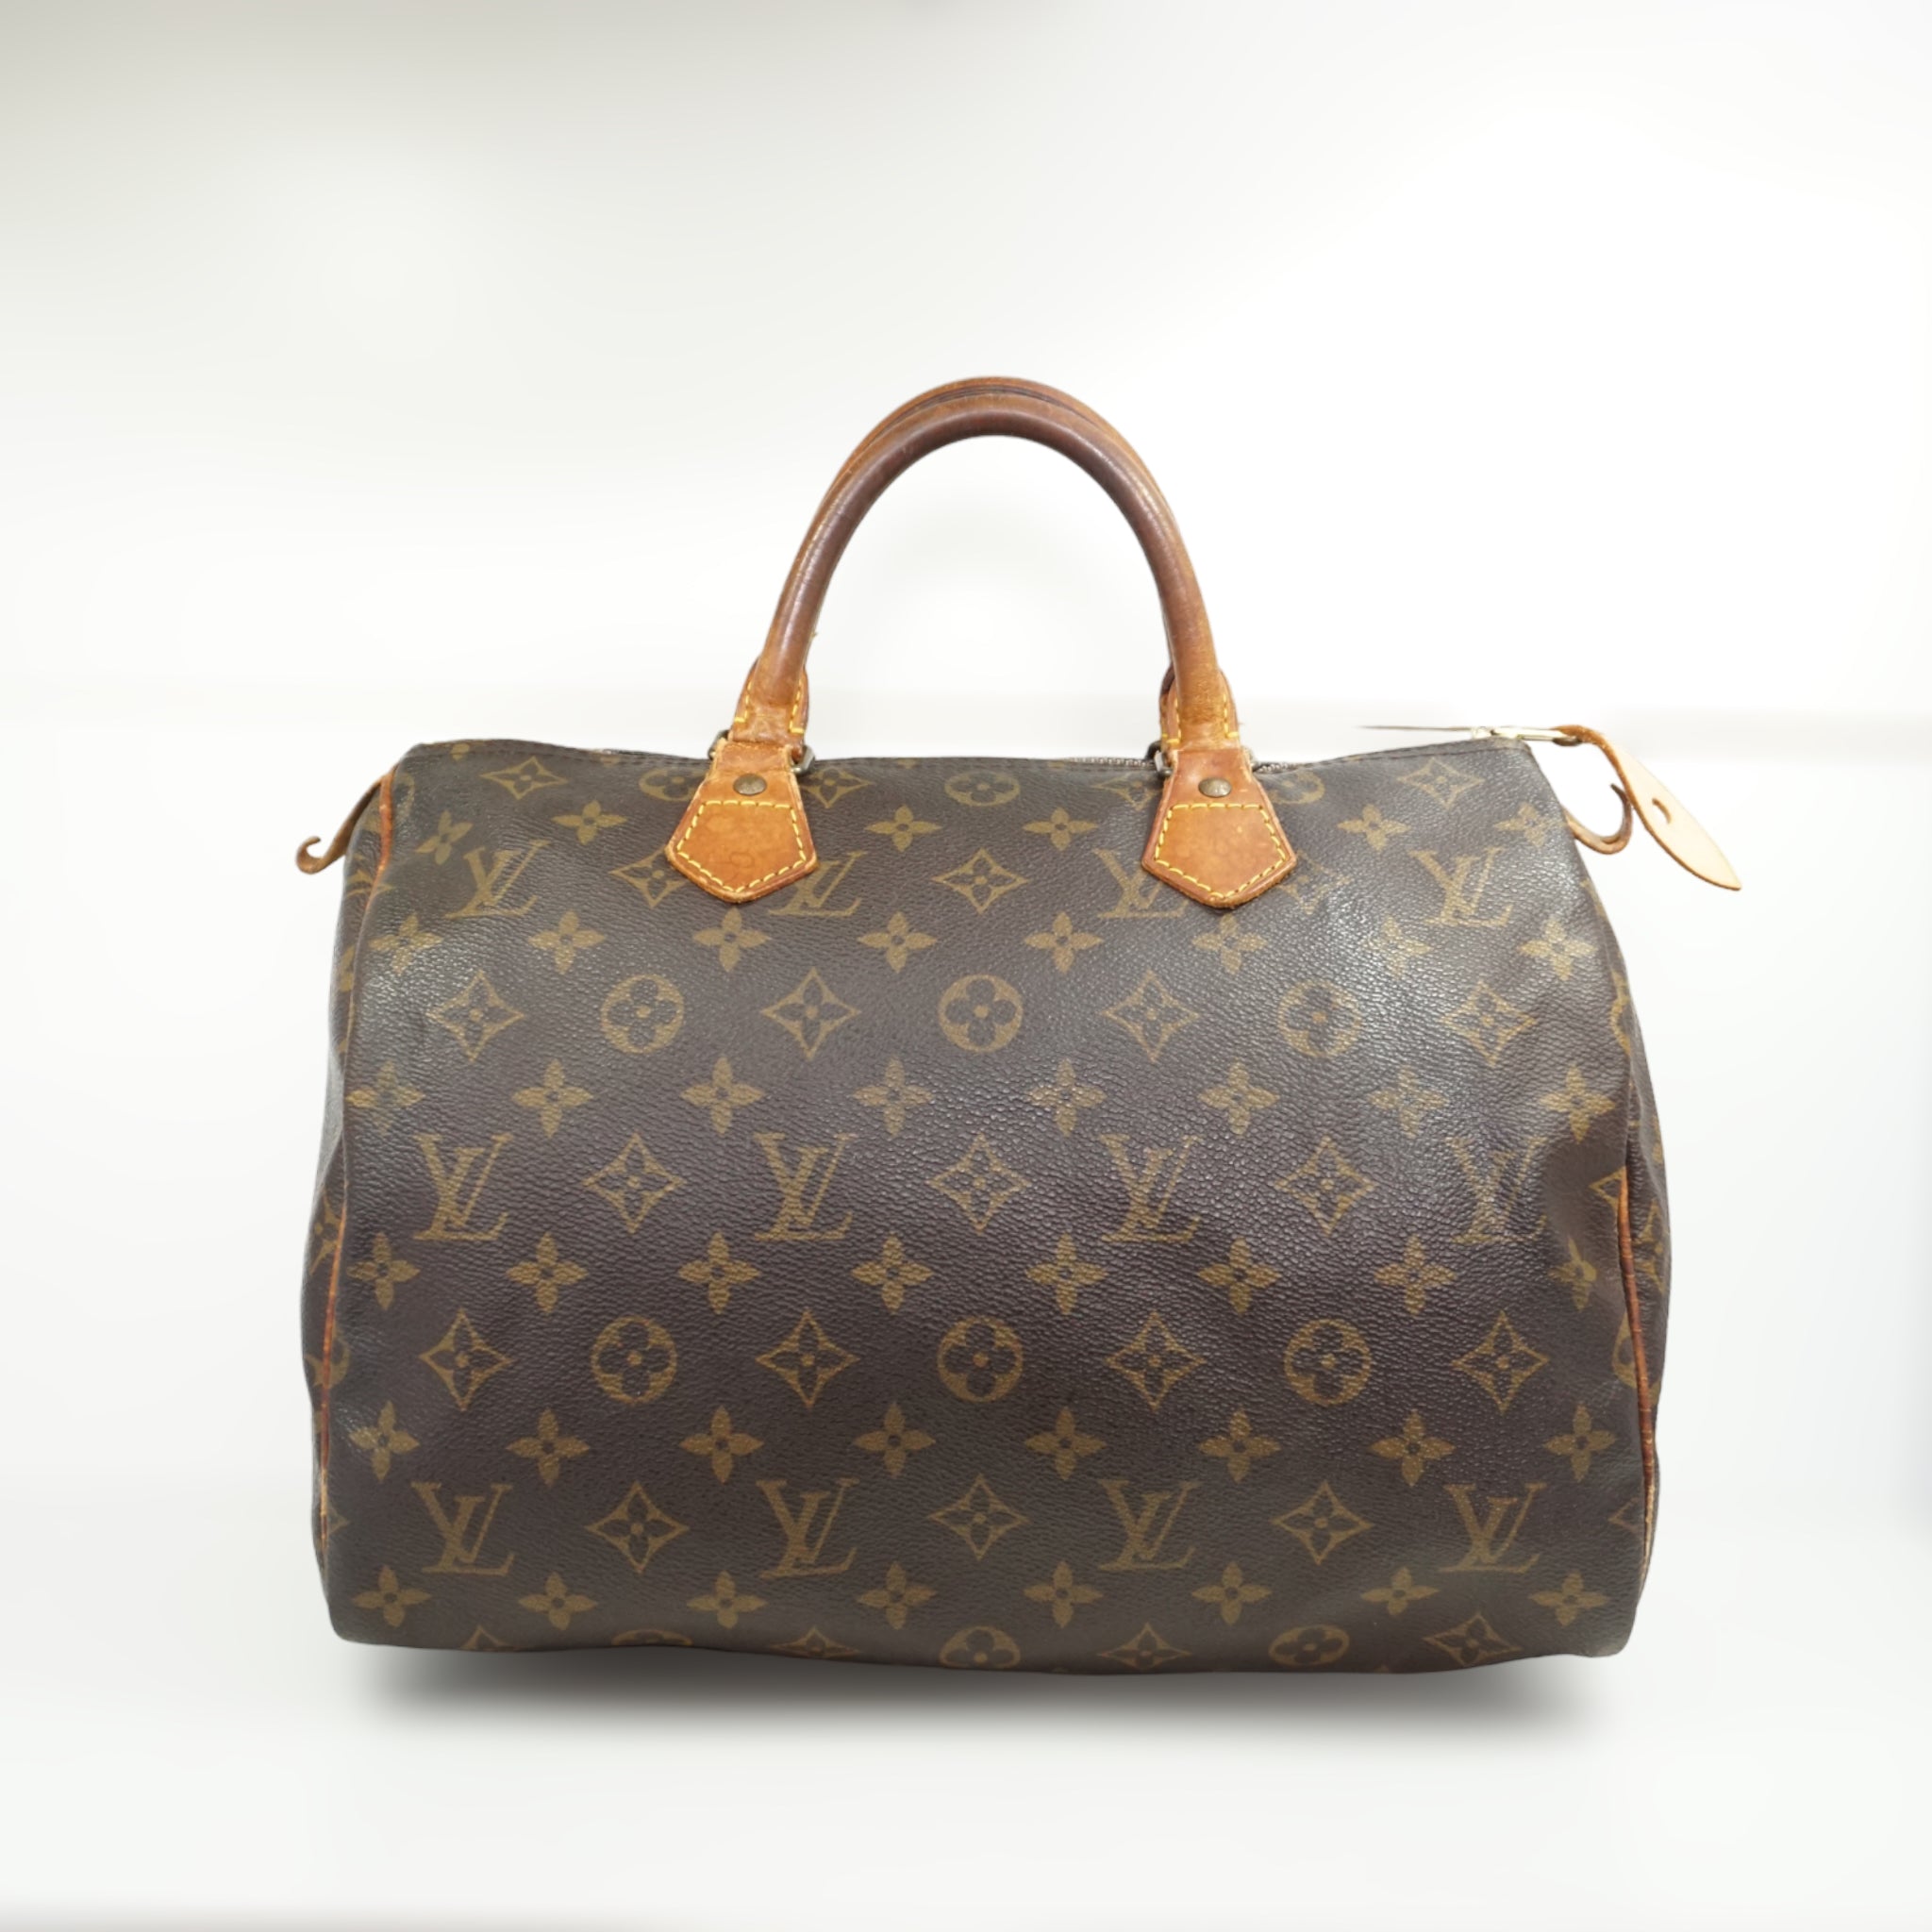 Shop Louis Vuitton Speedy online